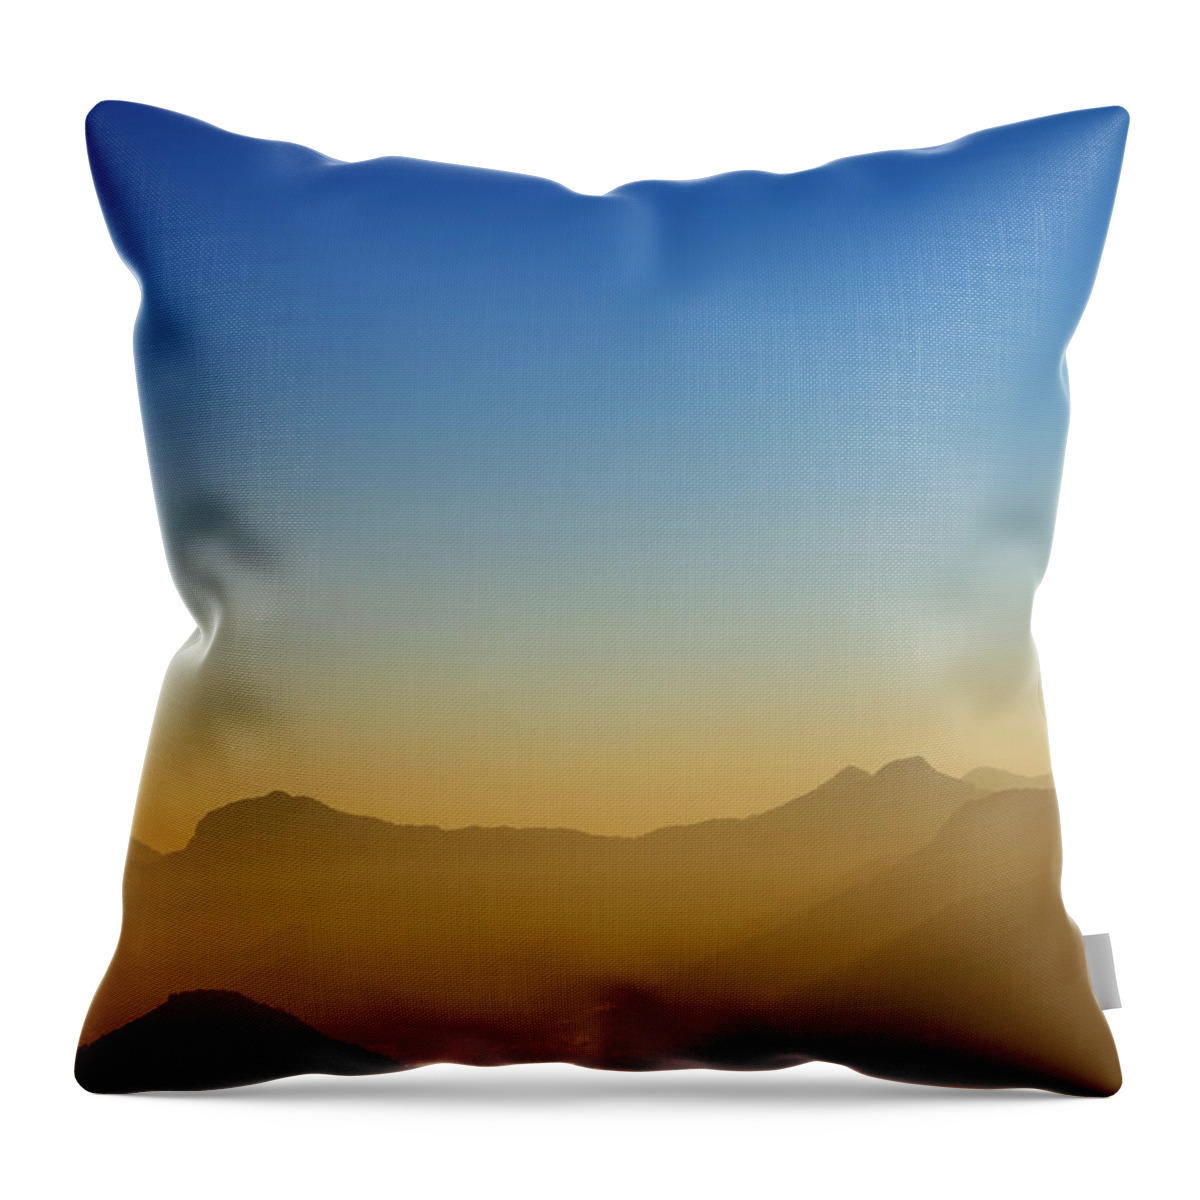 Scenics Throw Pillow featuring the photograph Mountains Of Rio De Janeiro by Antonello